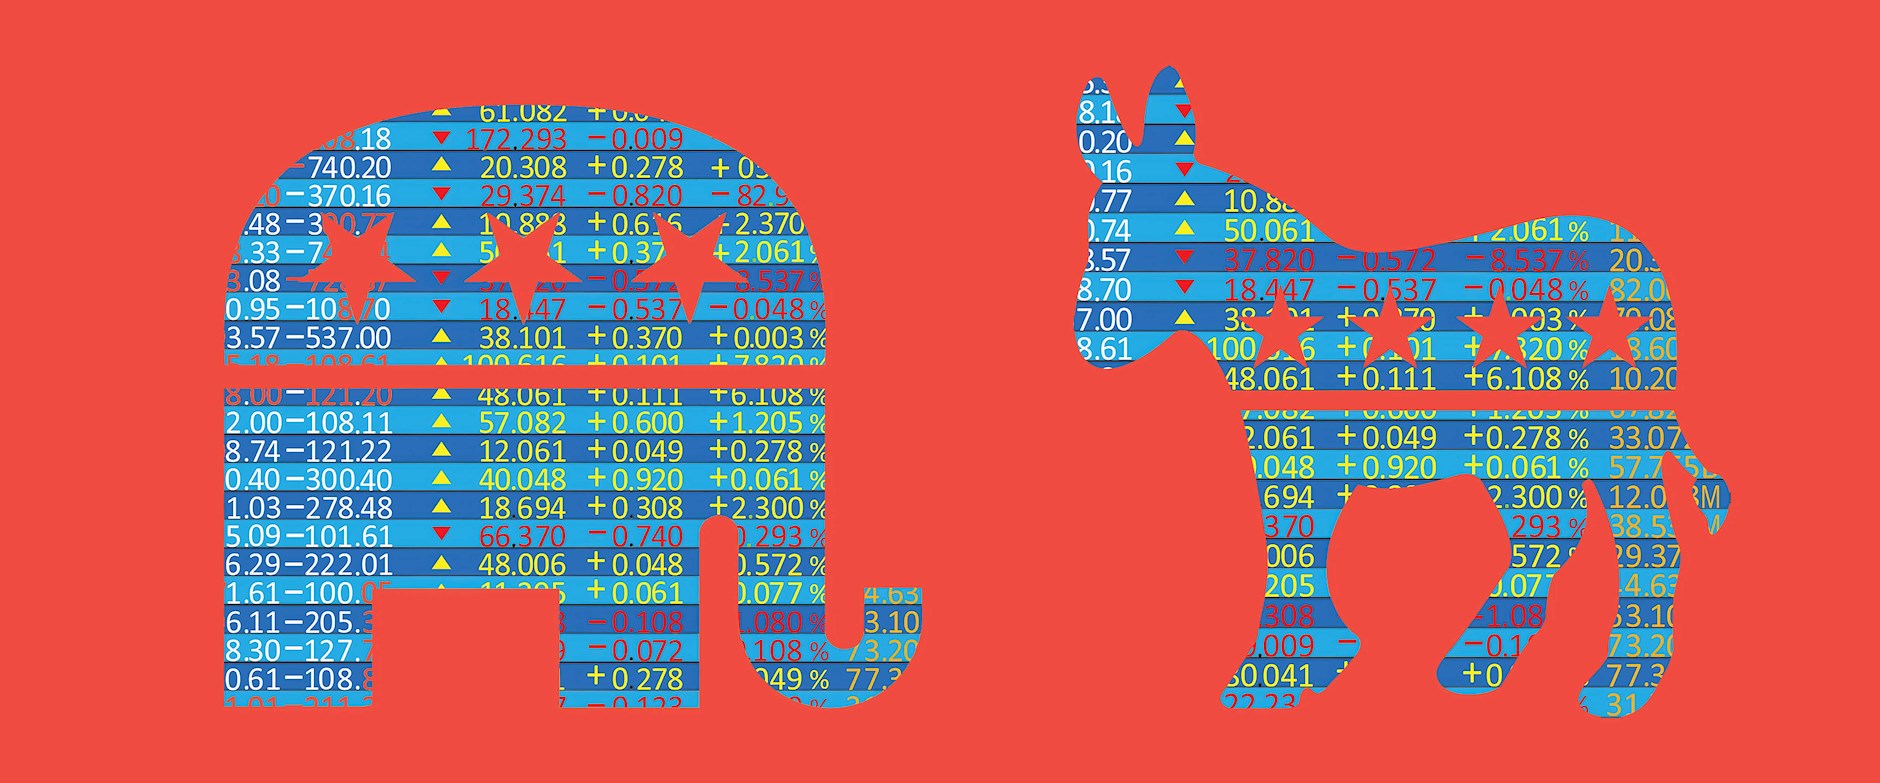 Stocks shaped to look like a donkey and elephant